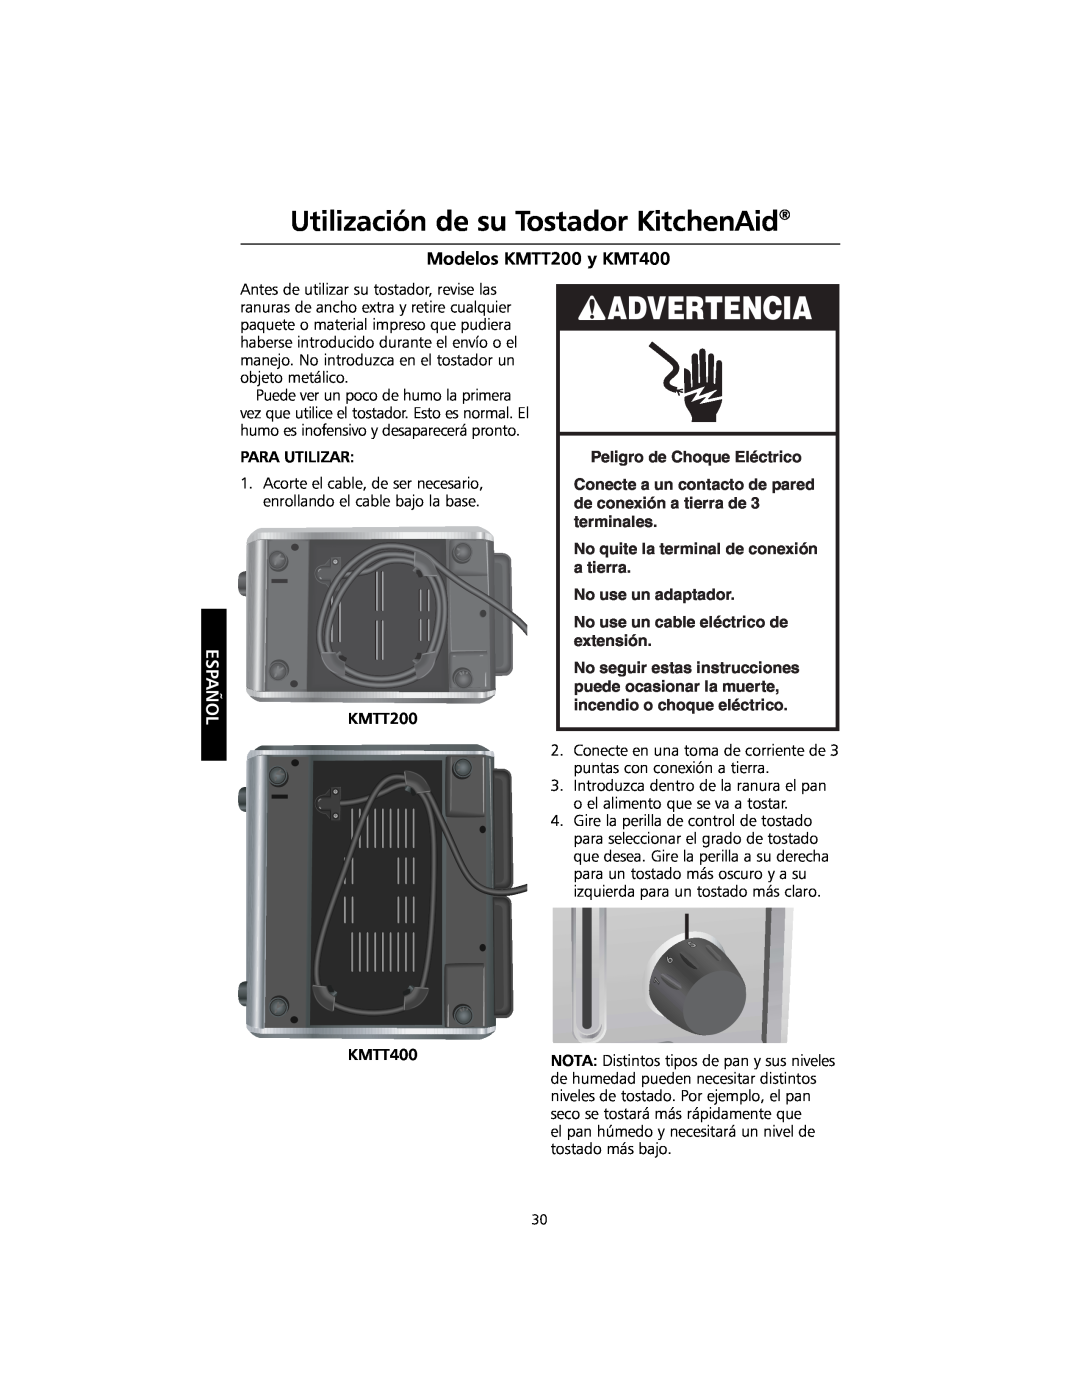 KitchenAid KMTT400 manual Utilización de su Tostador KitchenAid, Advertencia, Modelos KMTT200 y KMT400, Español 